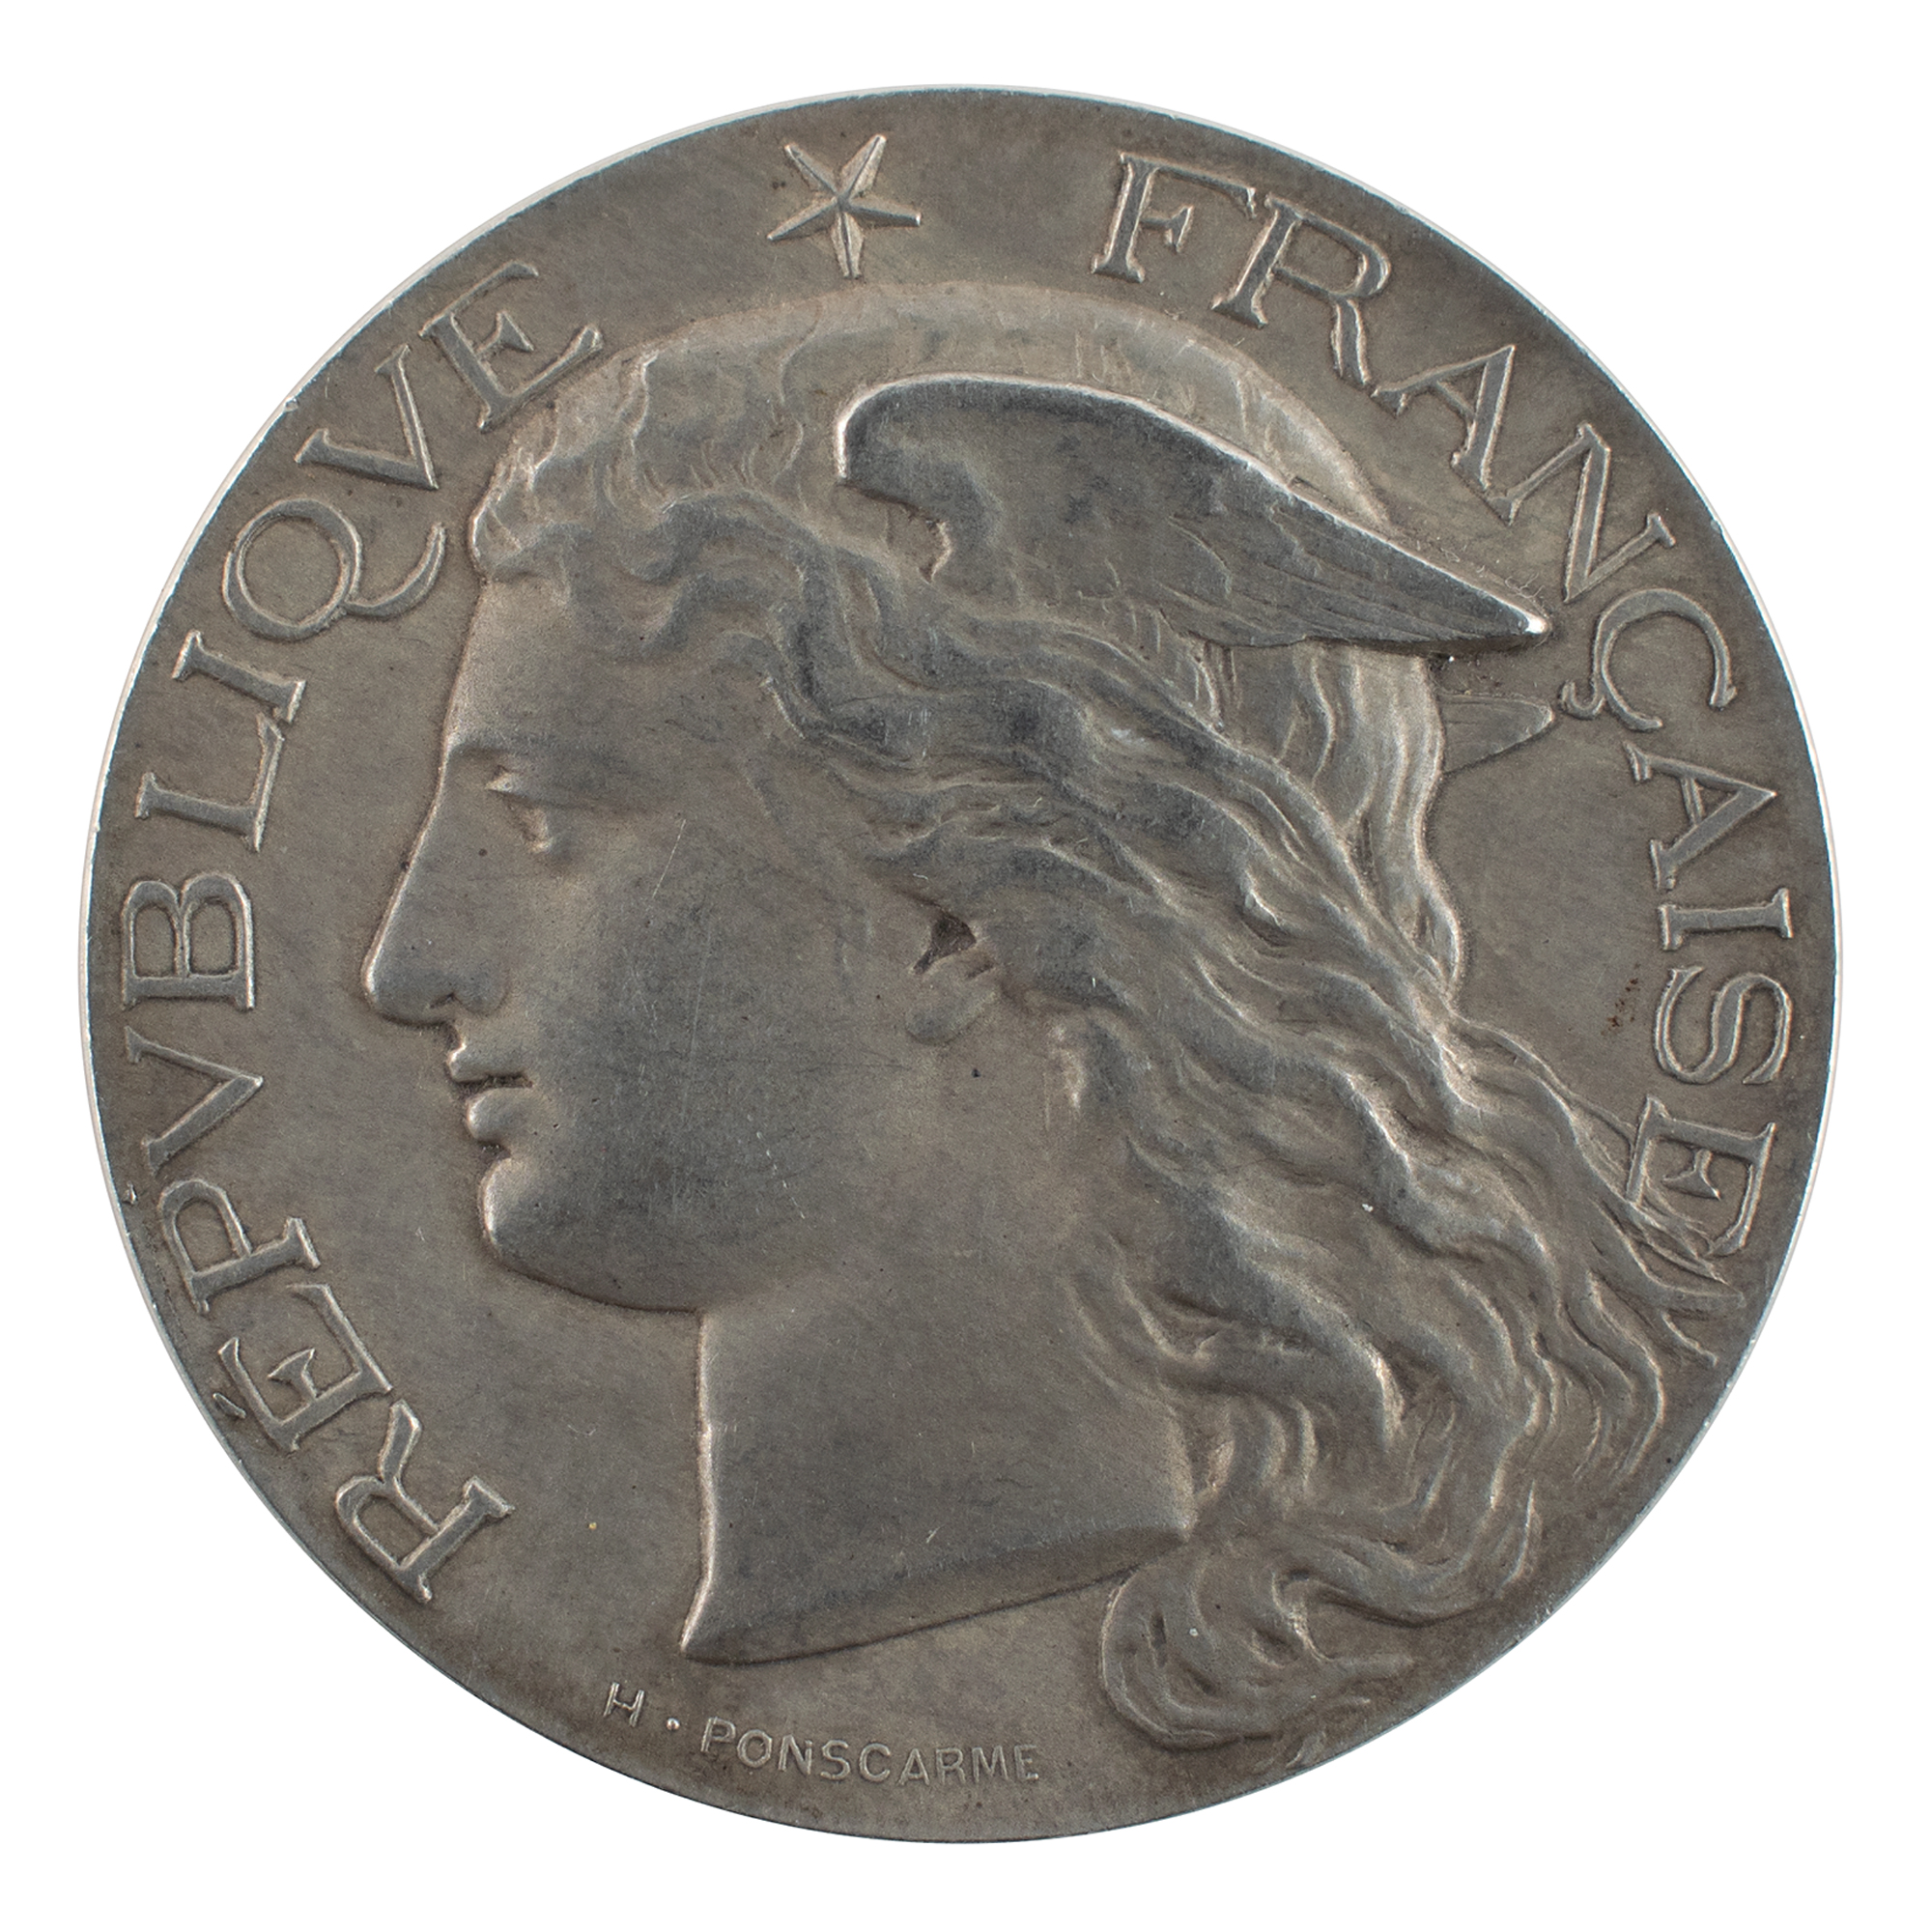 Lot #6007 Paris 1900 Olympics 'Equestrian Judge' Participation Medal